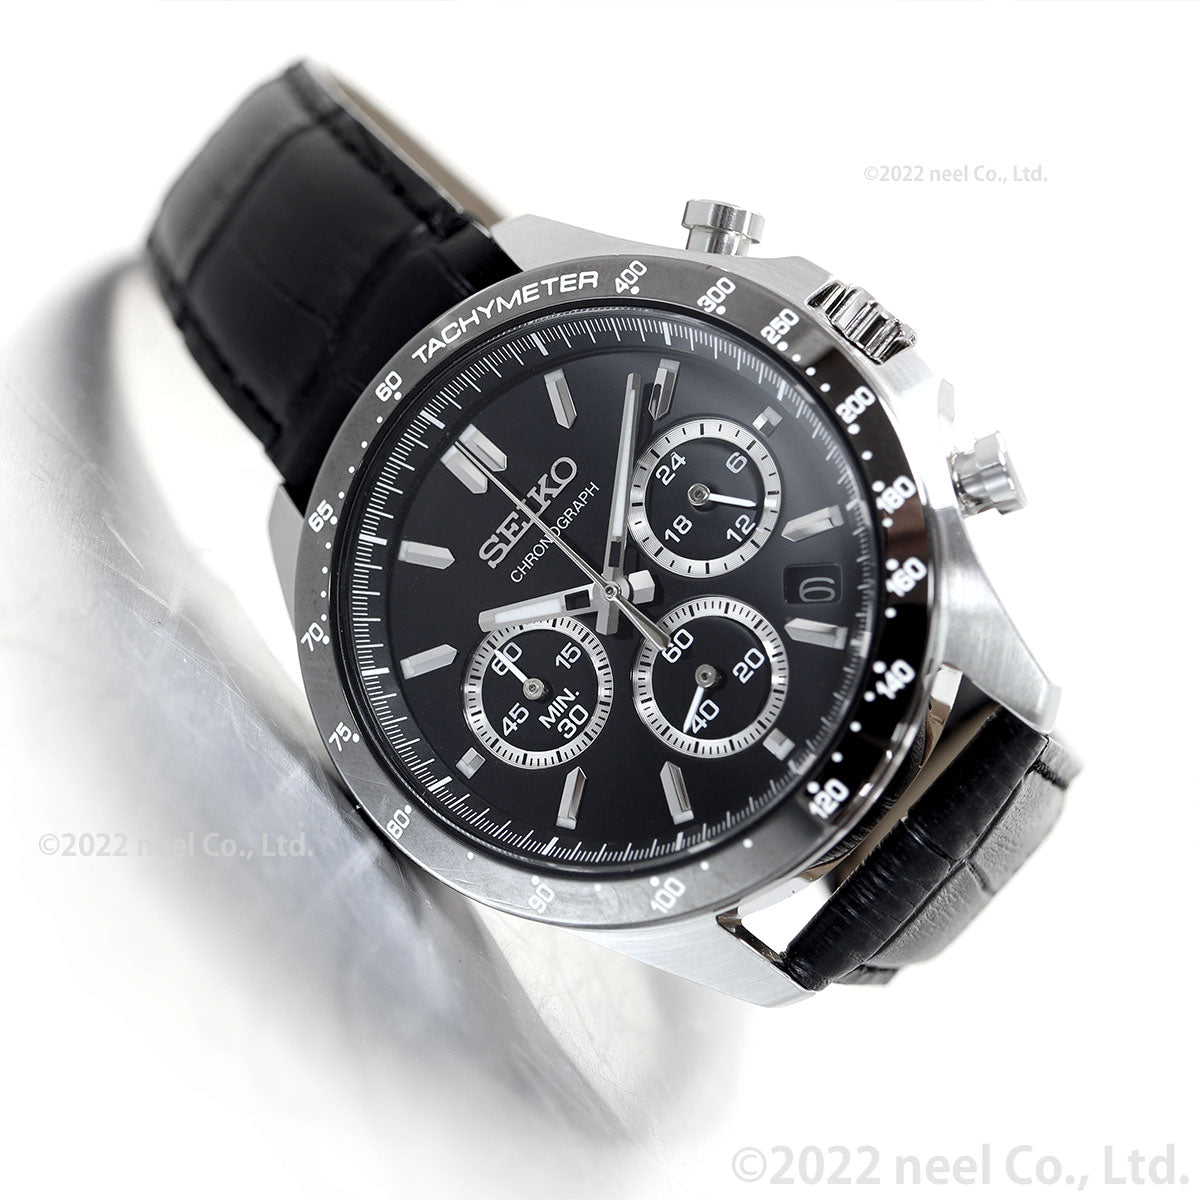 セイコー セレクション SEIKO SELECTION 8Tクロノ SBTR021 腕時計 メンズ クロノグラフ